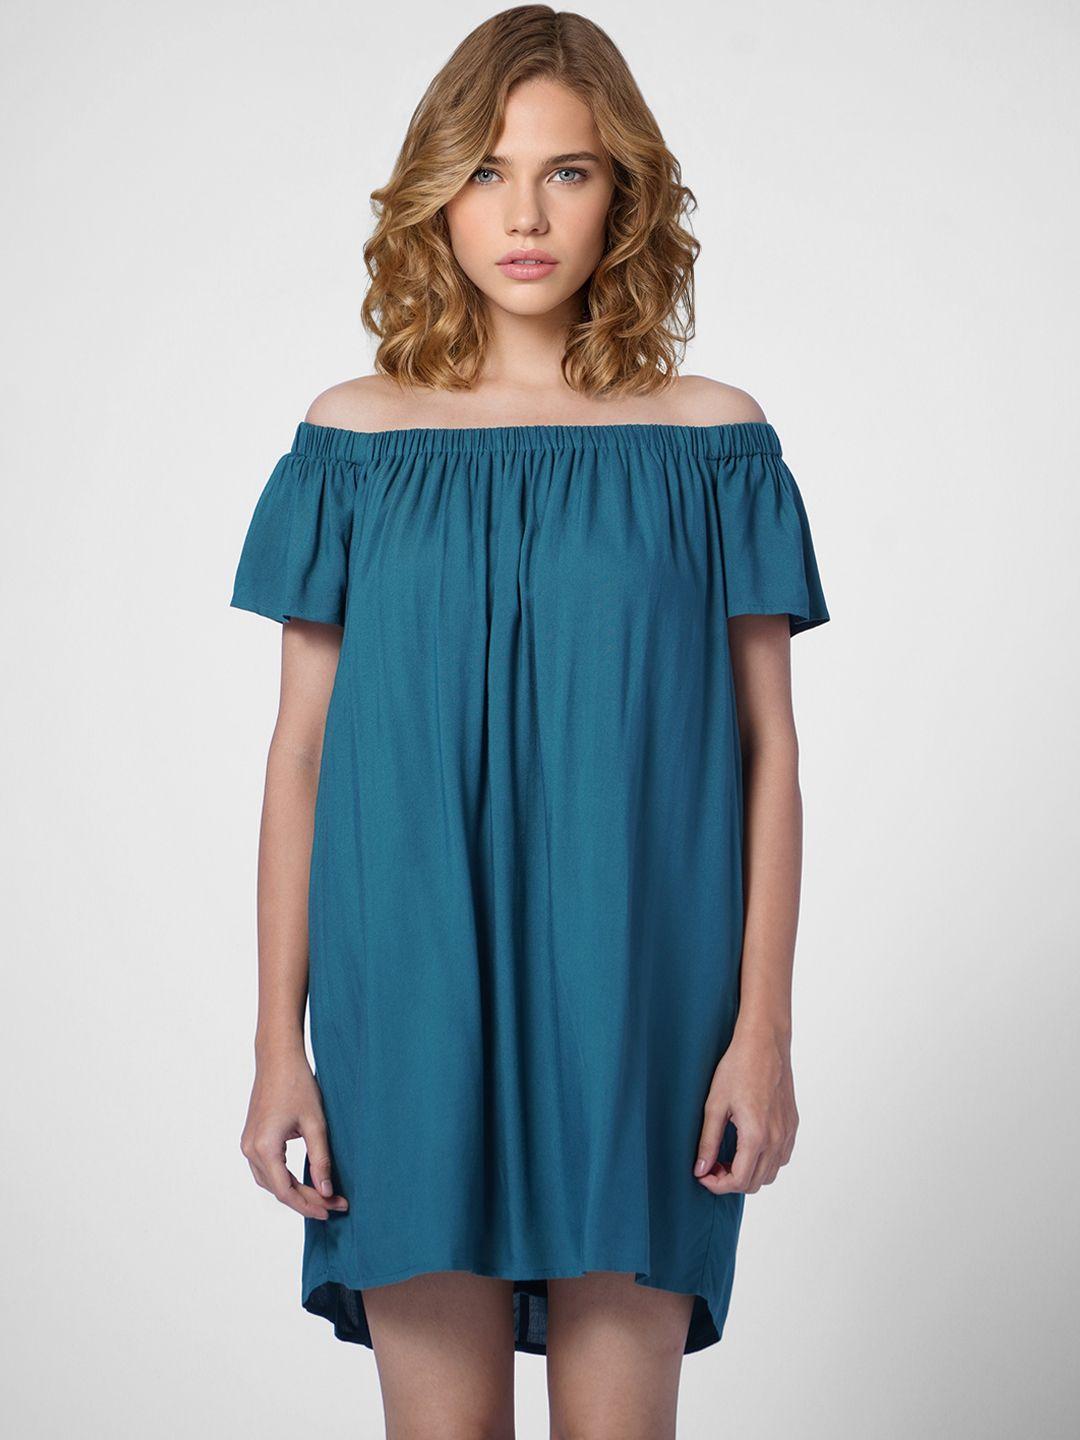 only-women-teal-blue-off-shoulder-a-line-dress